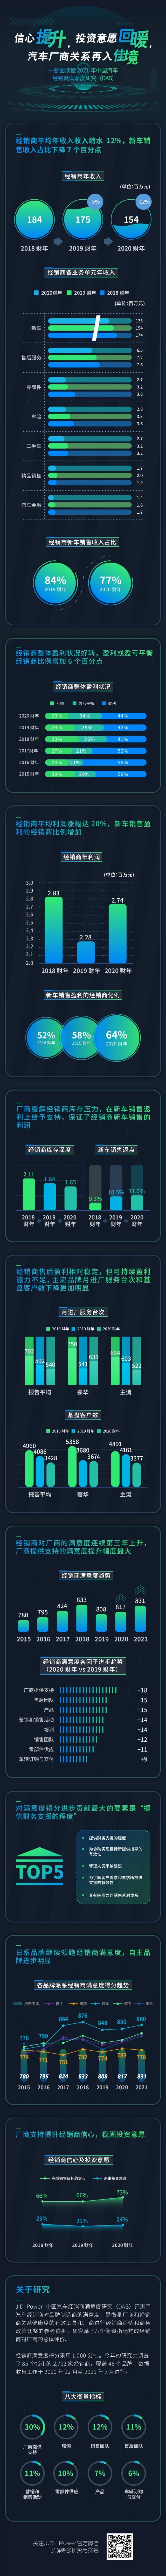 2021 China DAS Infographic